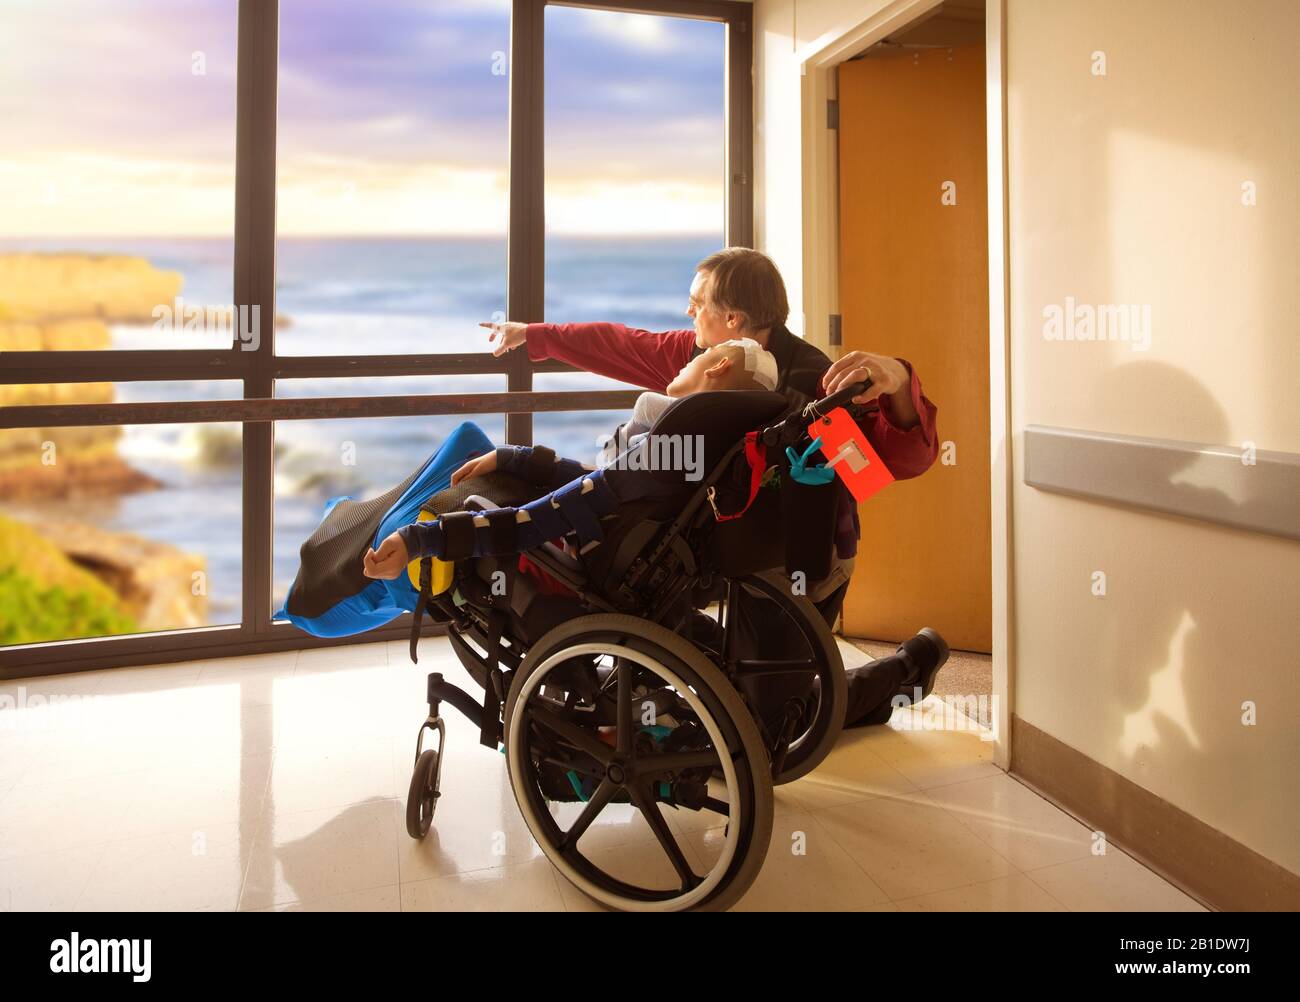 Le père s'agenouillant à côté d'un fils handicapé en fauteuil roulant en regardant la fenêtre de l'hôpital sur l'océan et les falaises à l'extérieur. L'enfant a récemment subi une chirurgie de la tête. Banque D'Images